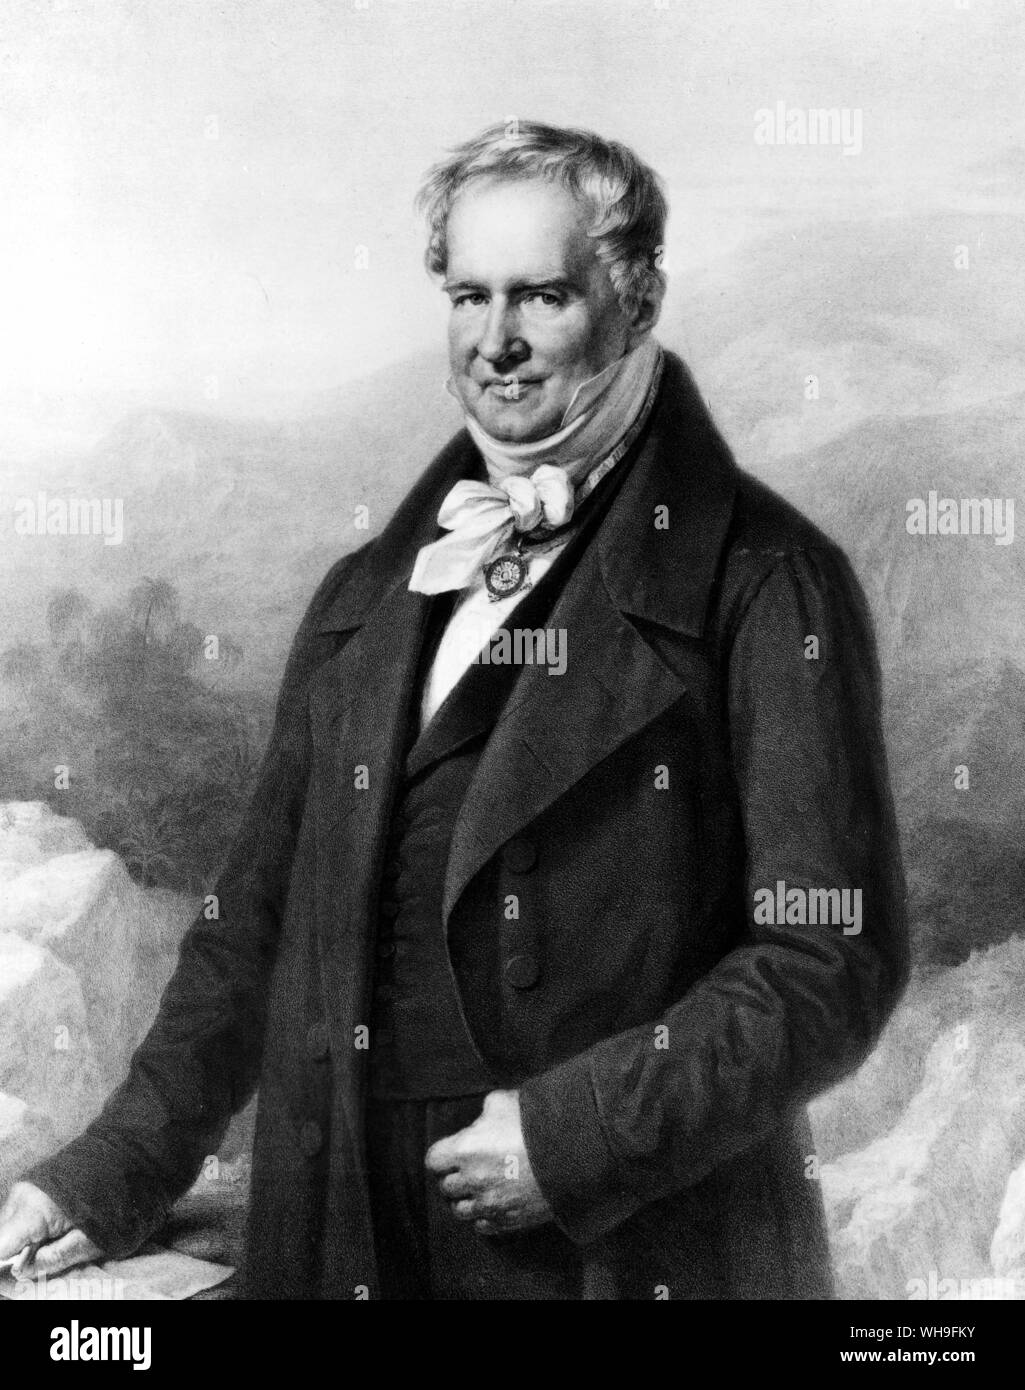 Alexander von Humboldt (1769-1859), German geophysicist, botanist, geologist and writer. Stock Photo